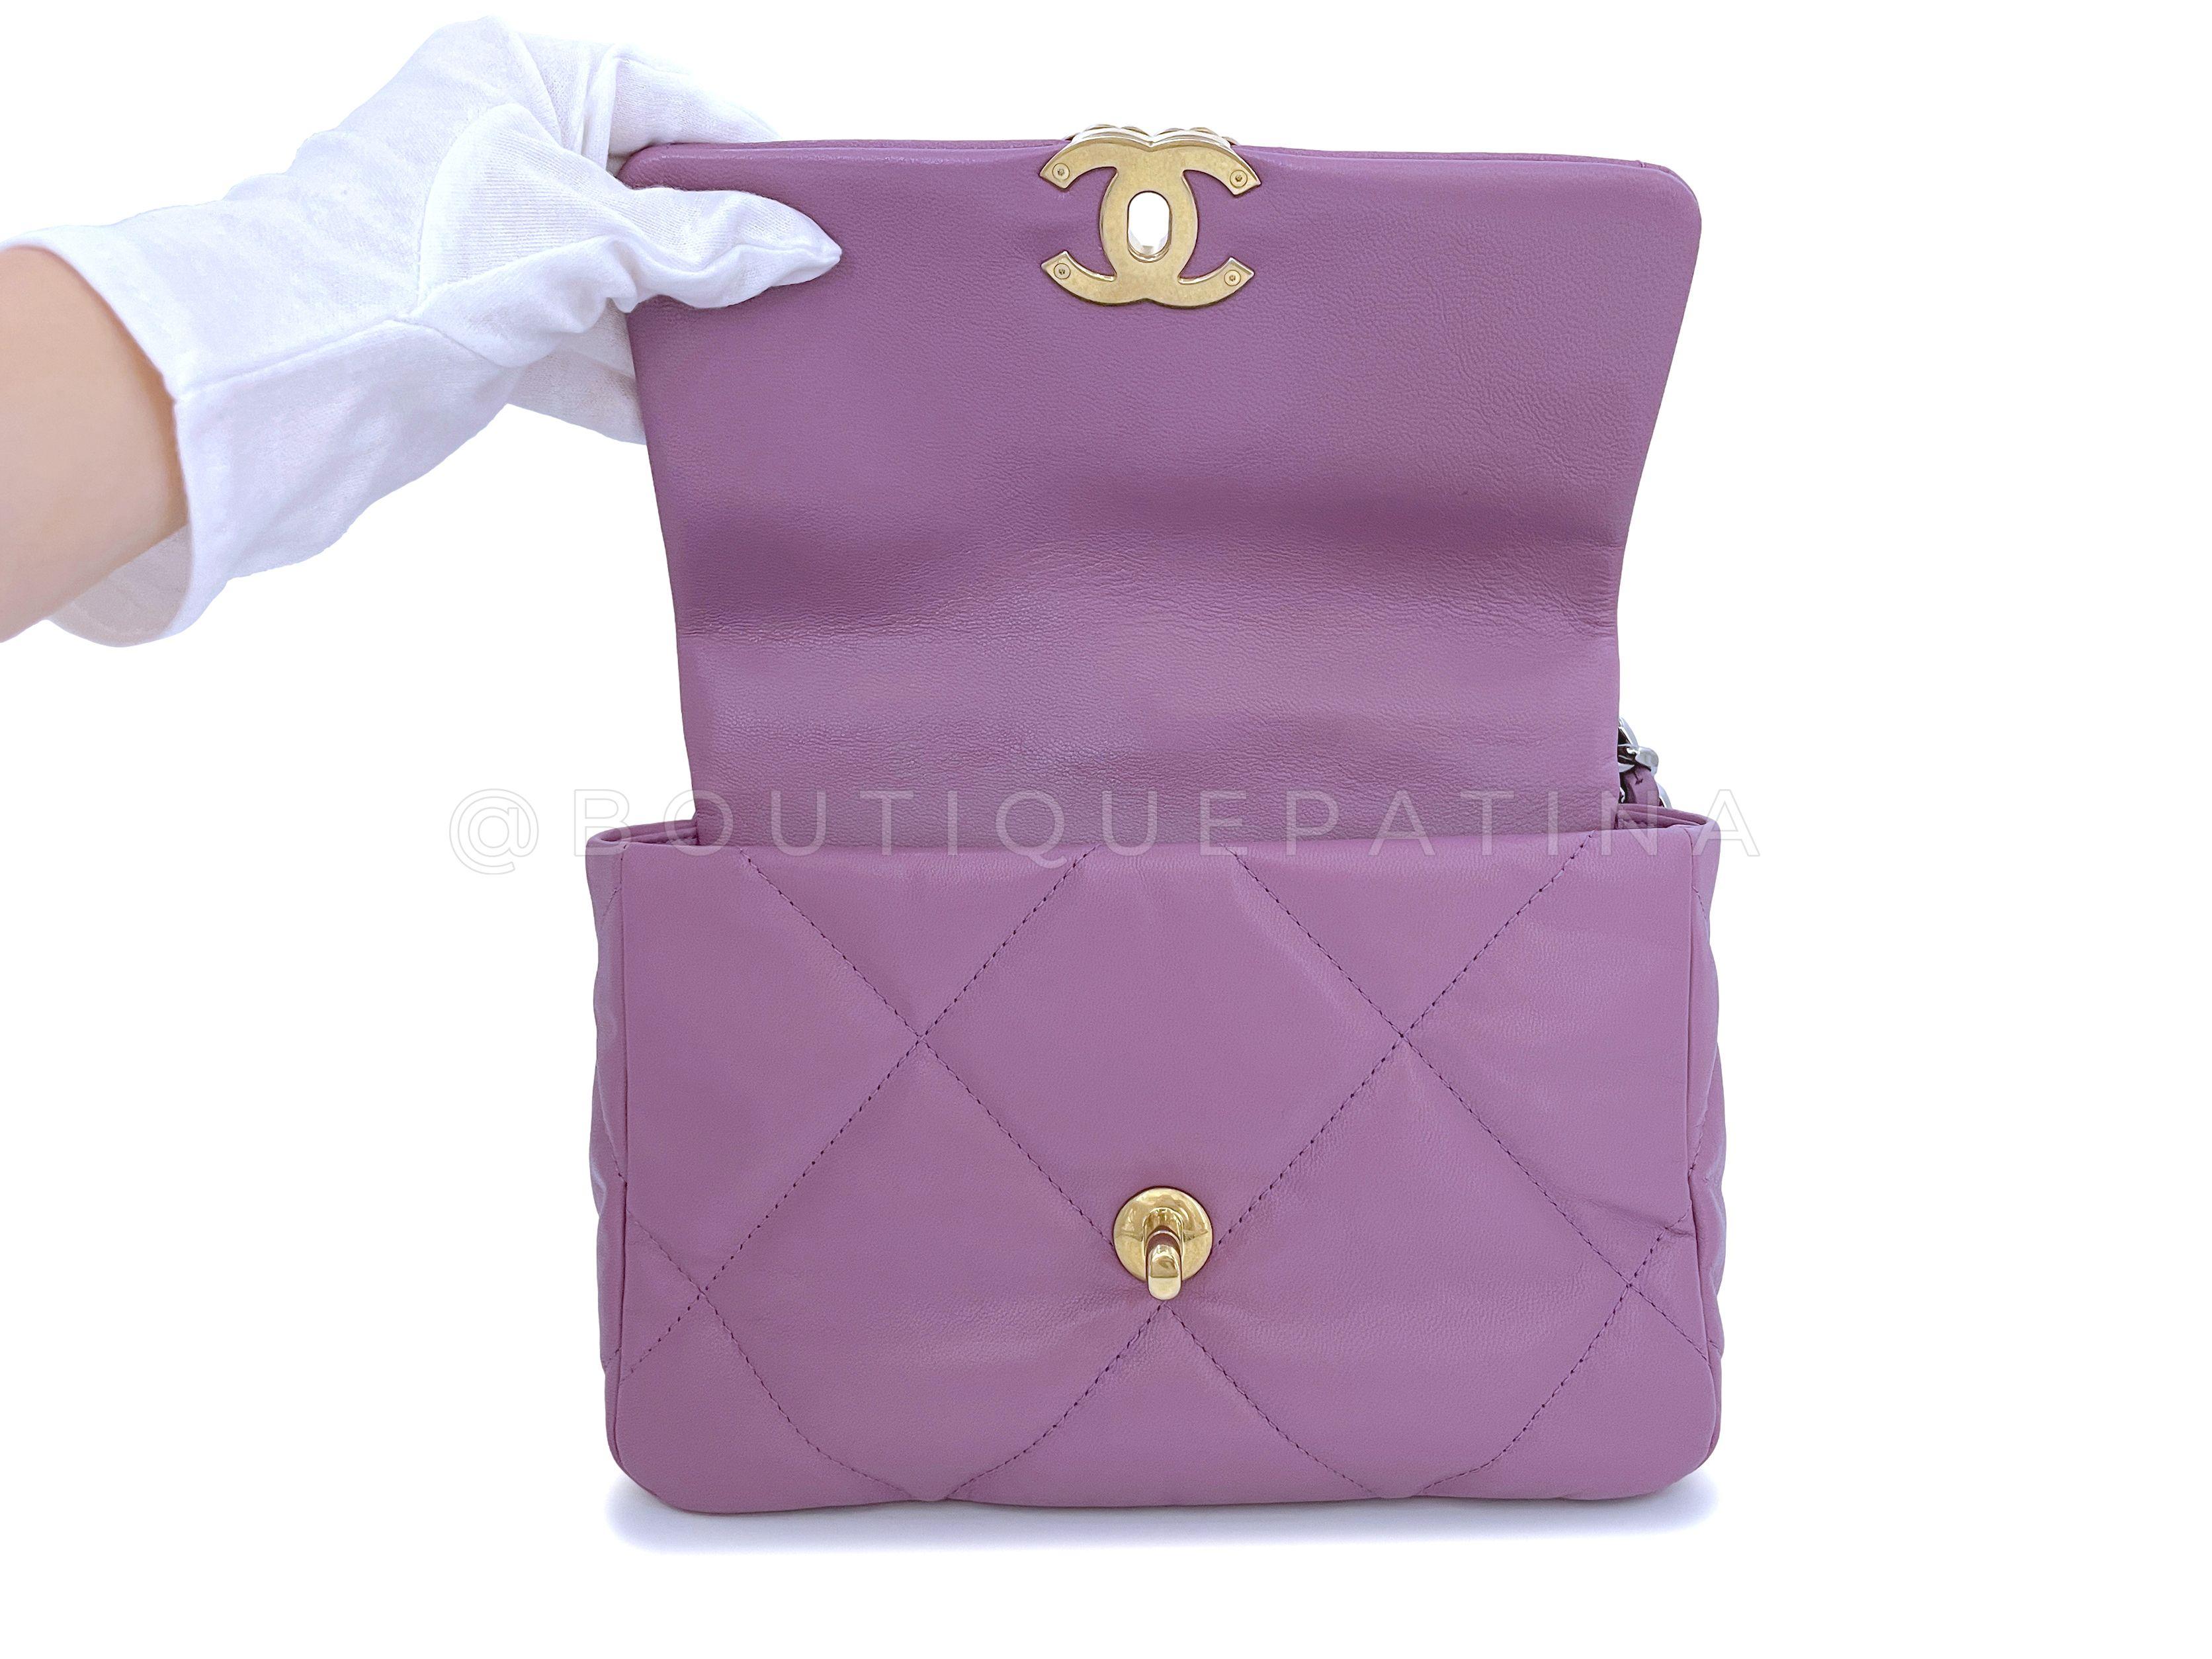 Chanel 19 20B Lavender Mauve Medium Flap Bag 65463 For Sale 3